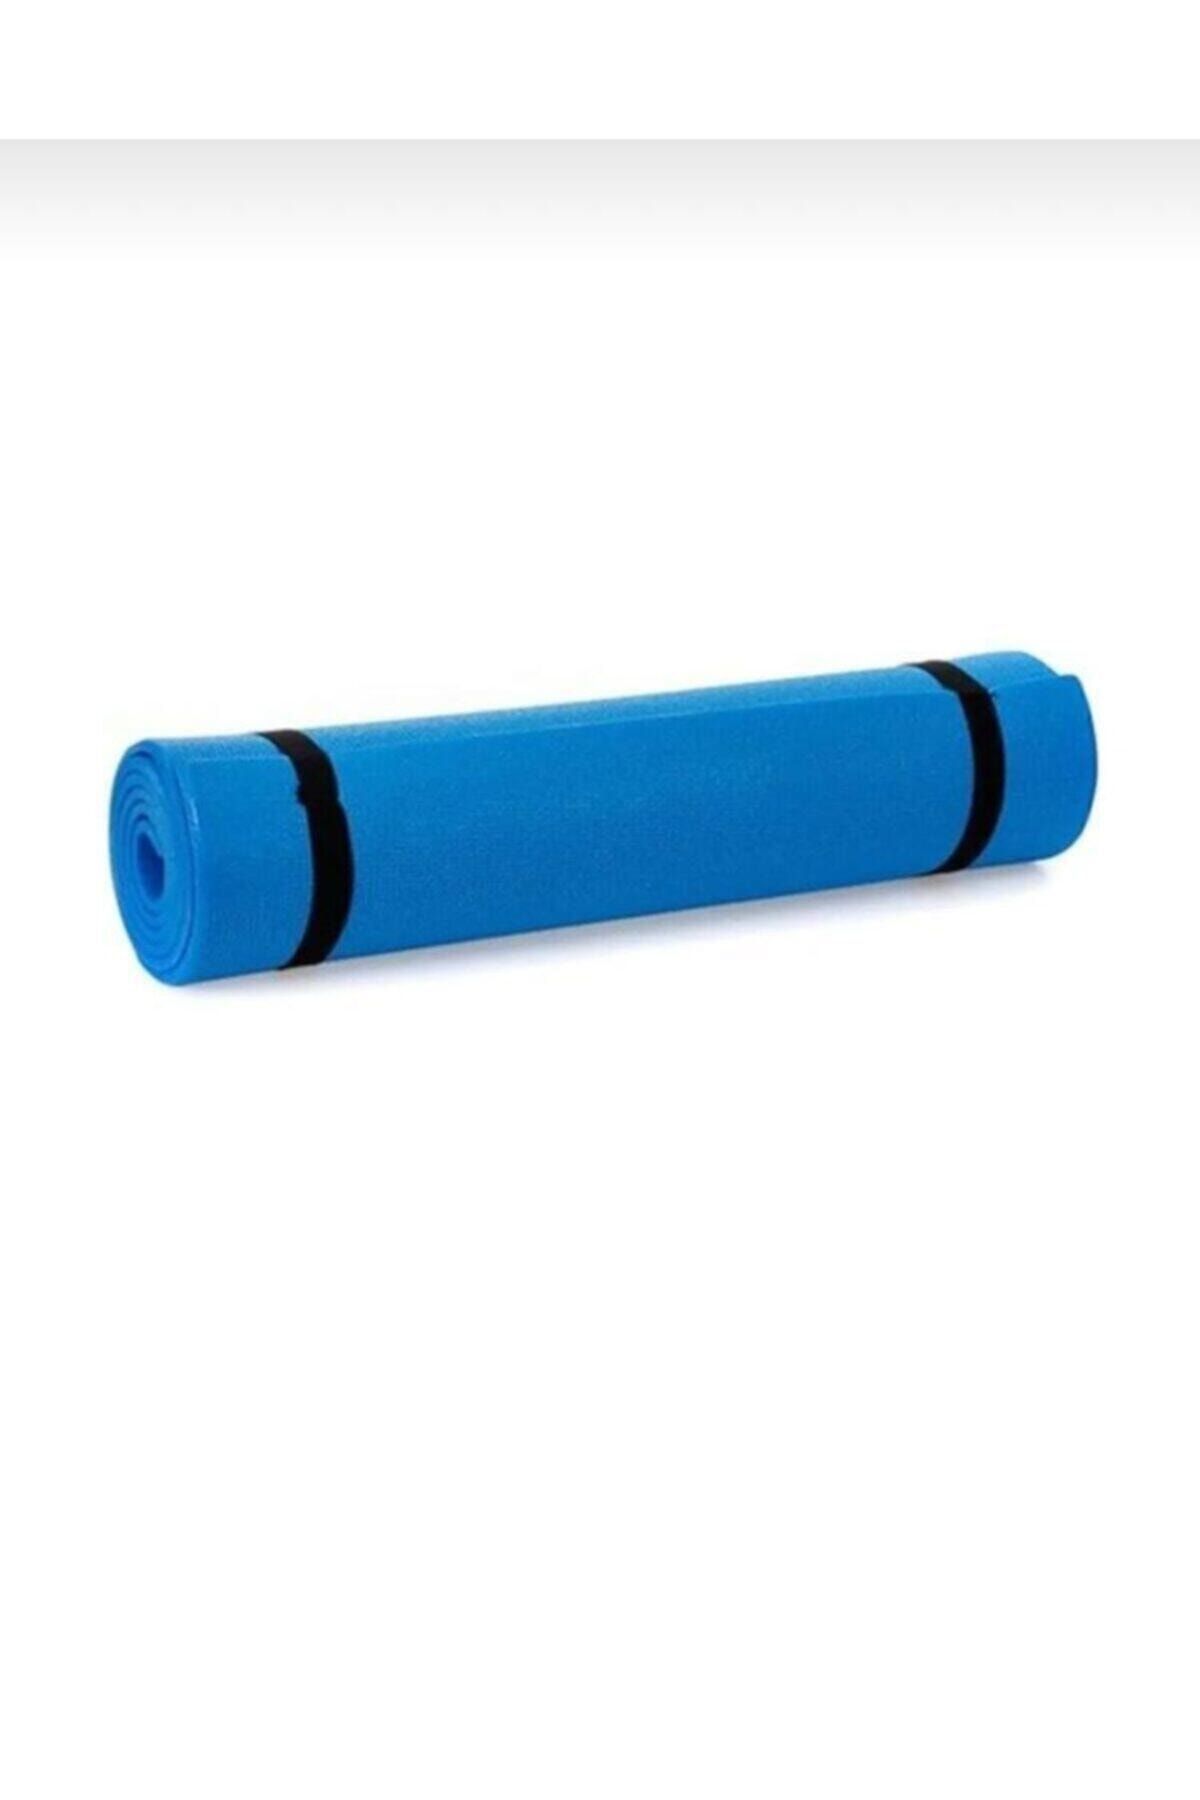 Leyaton 6,5 Mm Mavi Pilates Matı - Pilates Minderi - Egzersiz Minderi - Yer Matı 150 Cm X 50 Cm